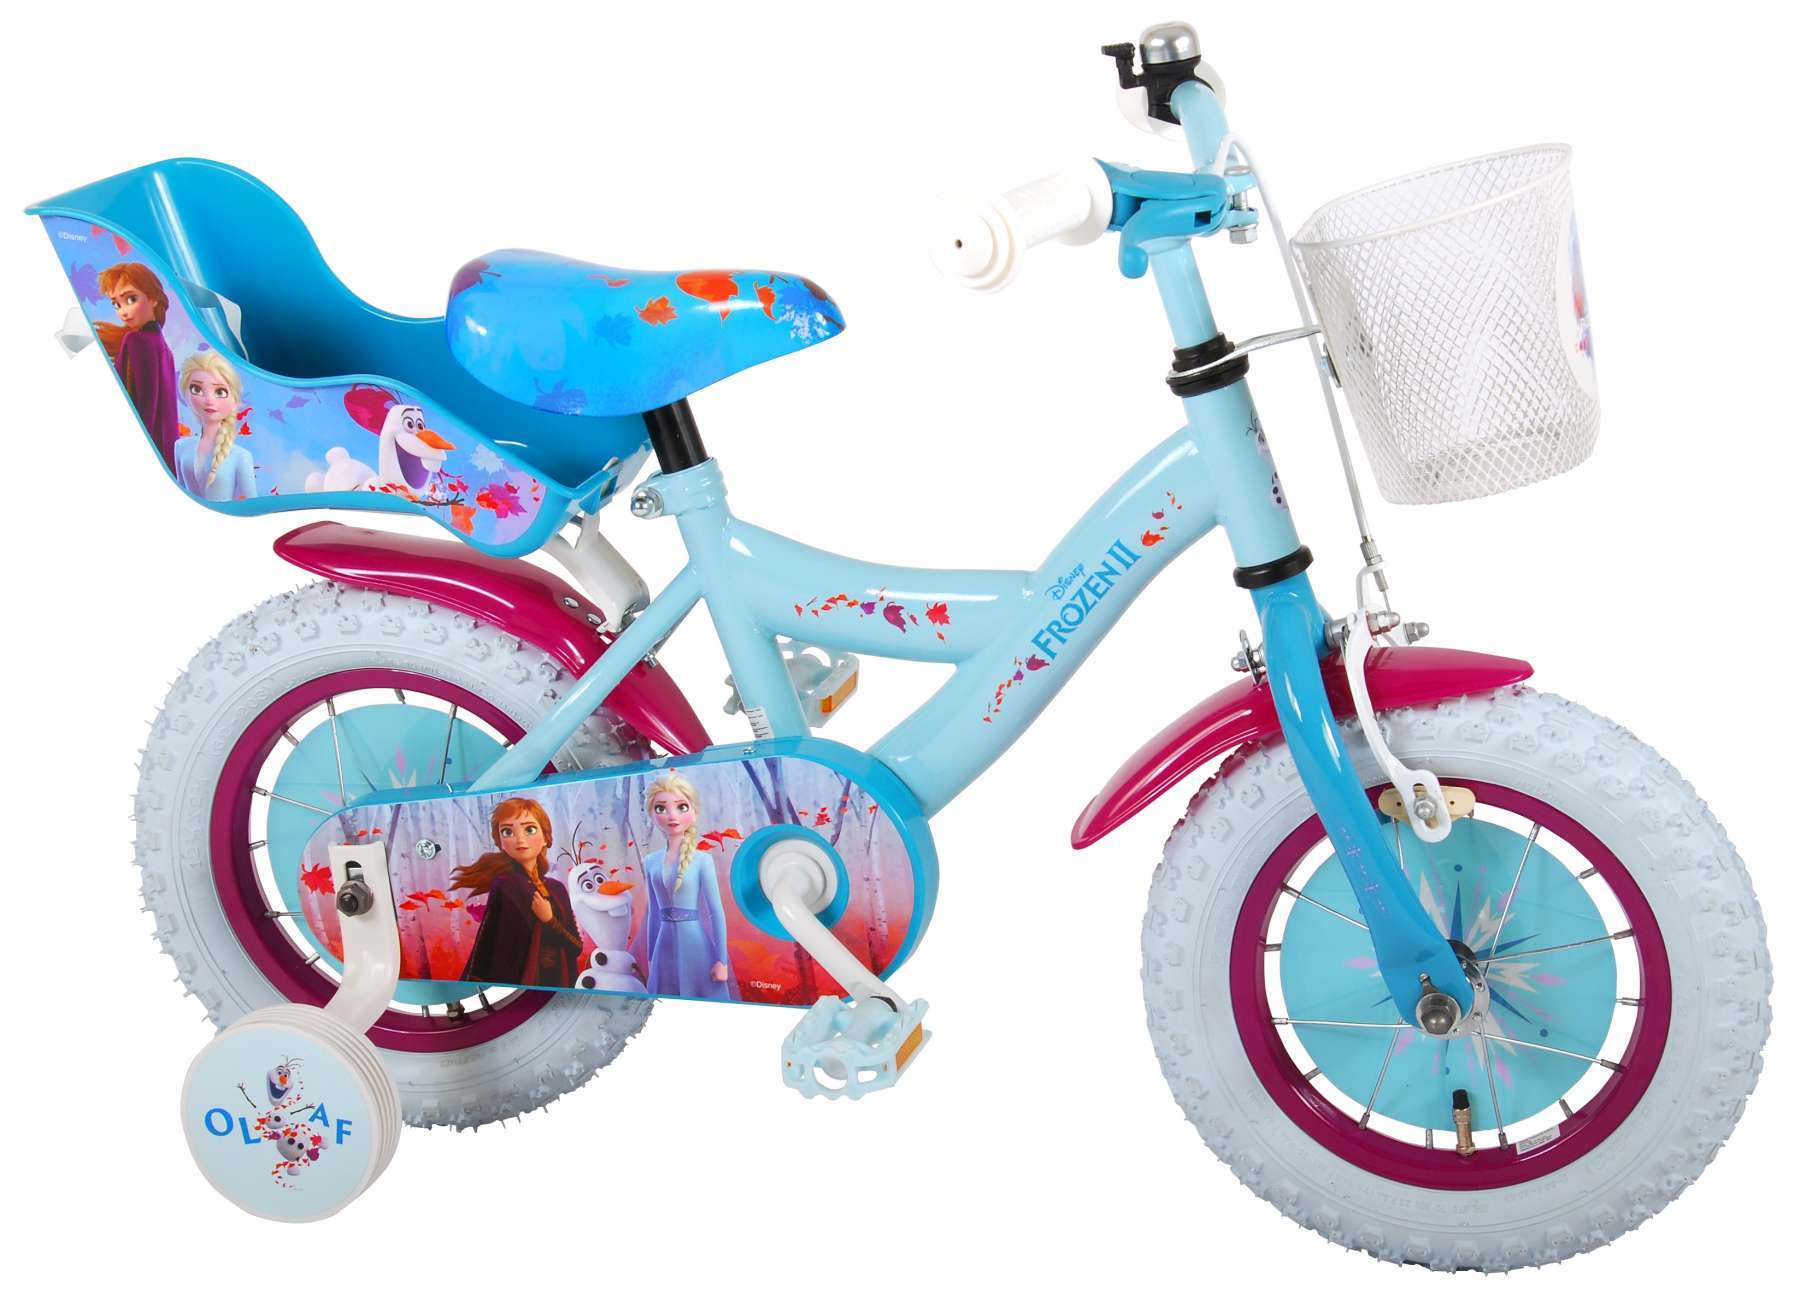 Vélo enfant Disney La reine des neiges 2 - fille - 12 po - bleu/mauve -  assemblé à 95%